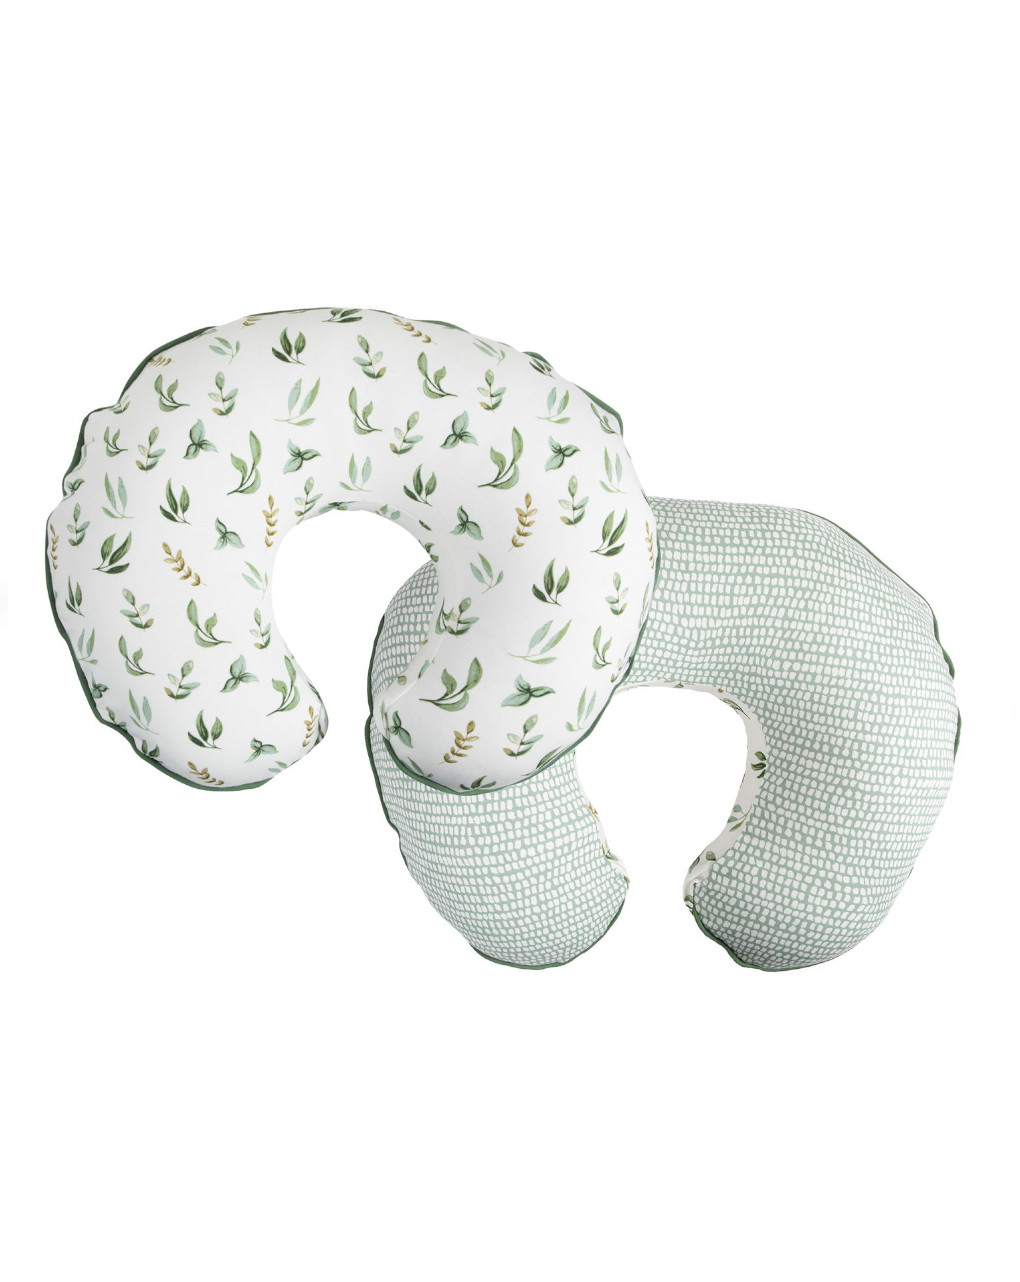 Nursing pillow - organic - green leaves - boppy